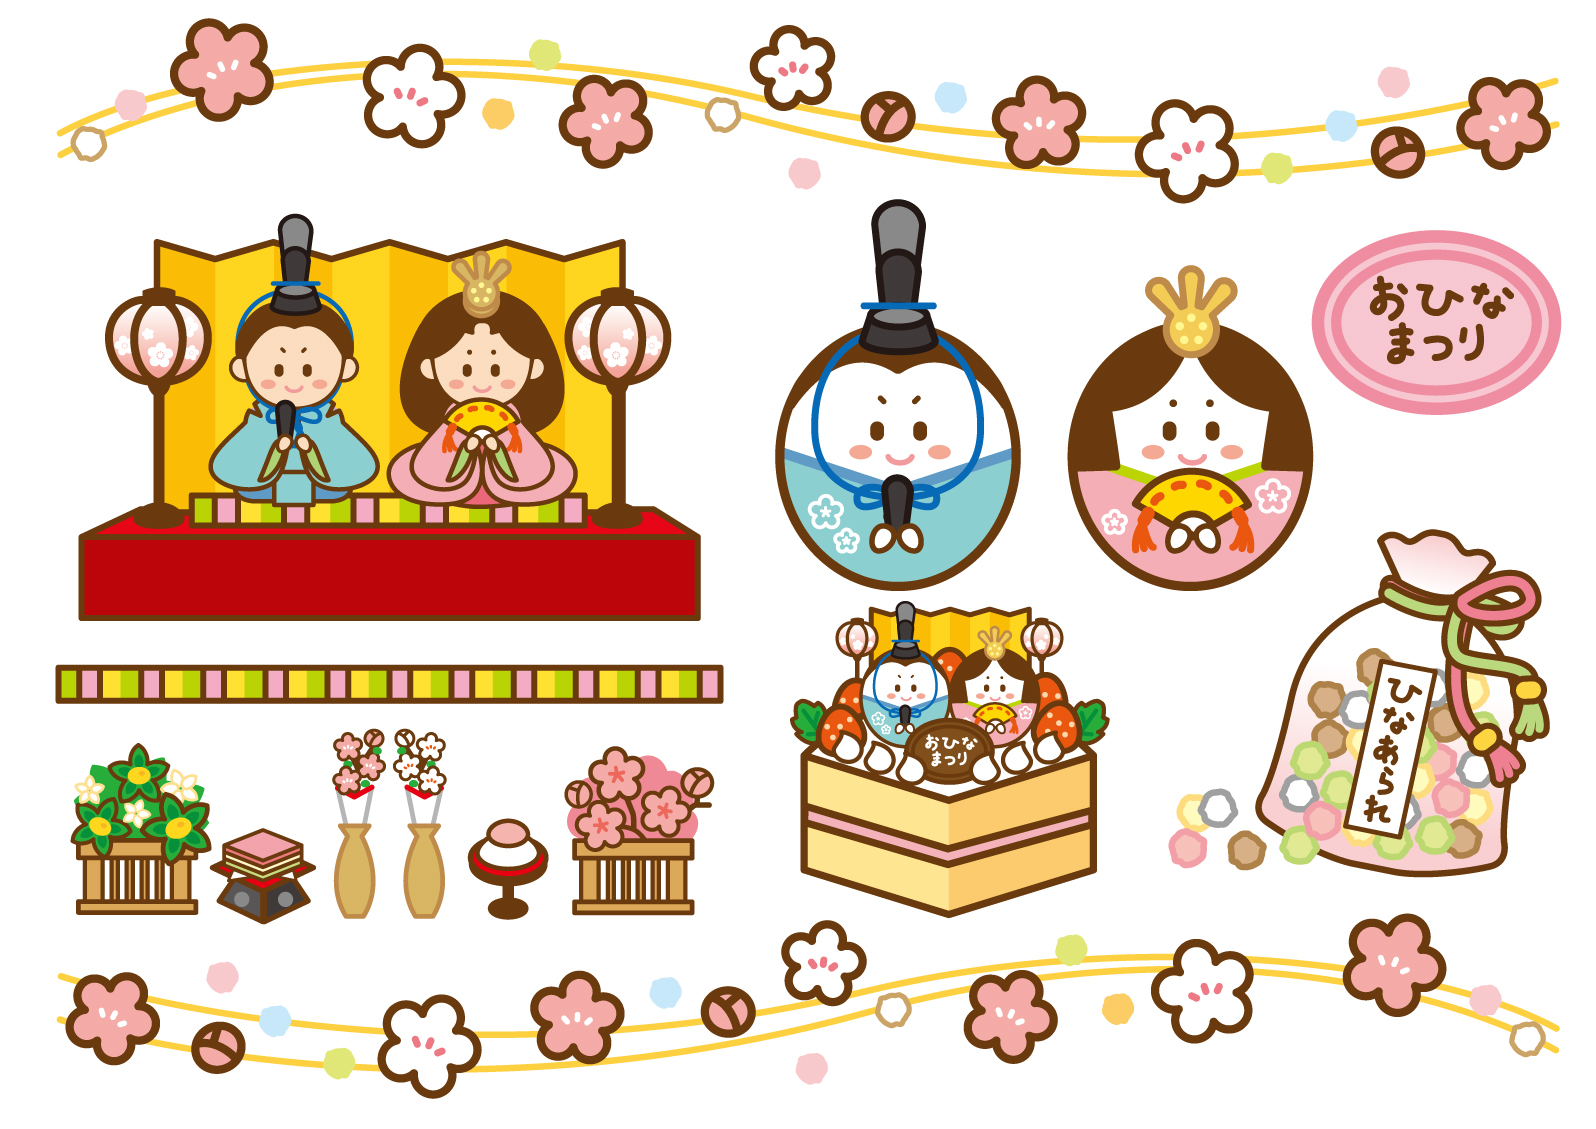 [2月17・27日] 守山市 カナリヤ親子サロン♪ ひな飾りや手作り玩具を作って親子で楽しみましょう‼︎ 参加無料☆